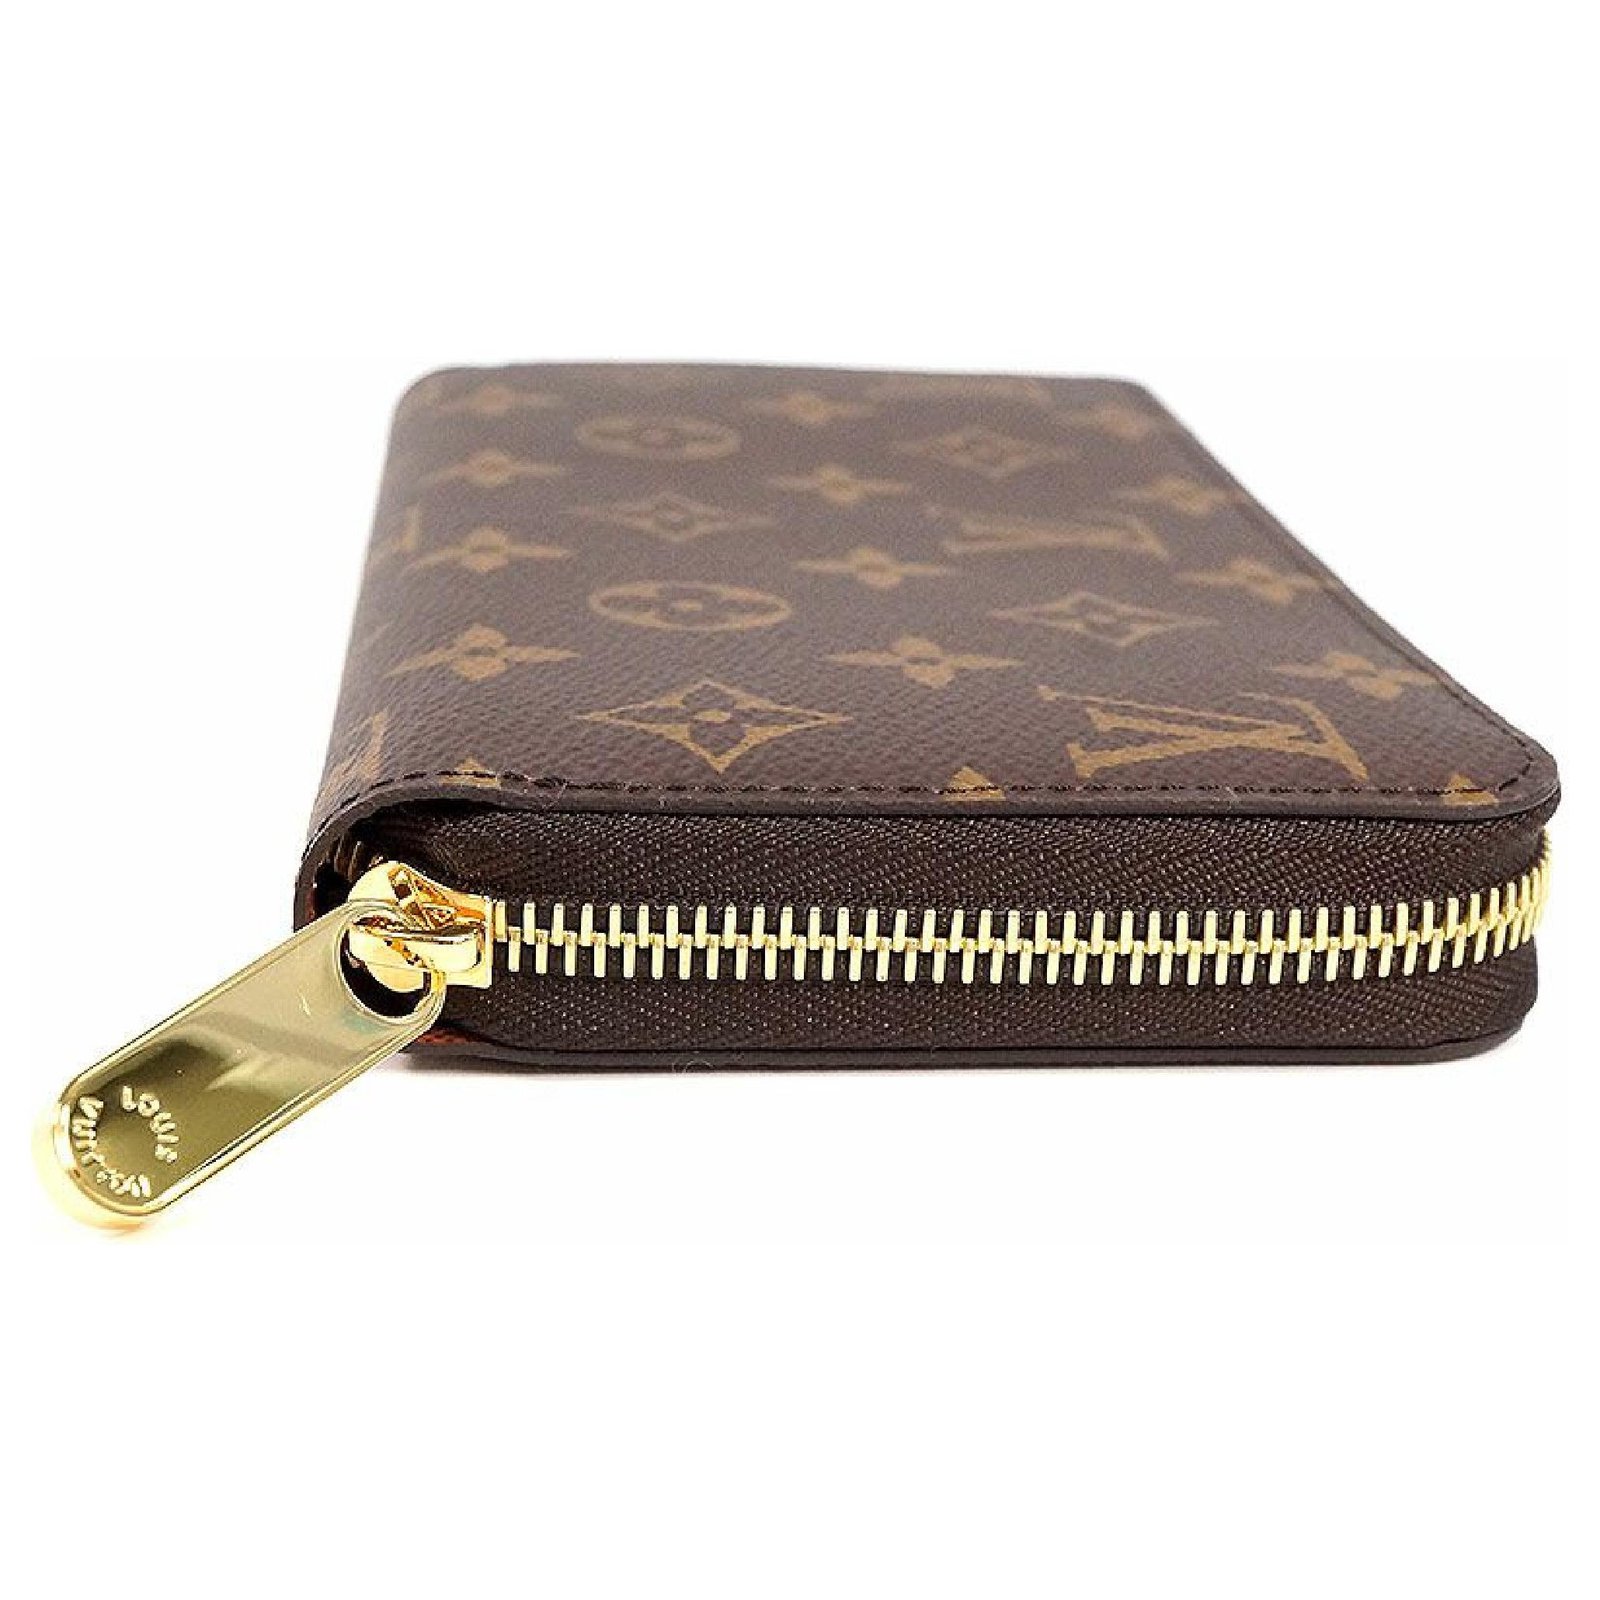 Louis Vuitton Zippy Wallet unisex long wallet M42616 Brown Cloth